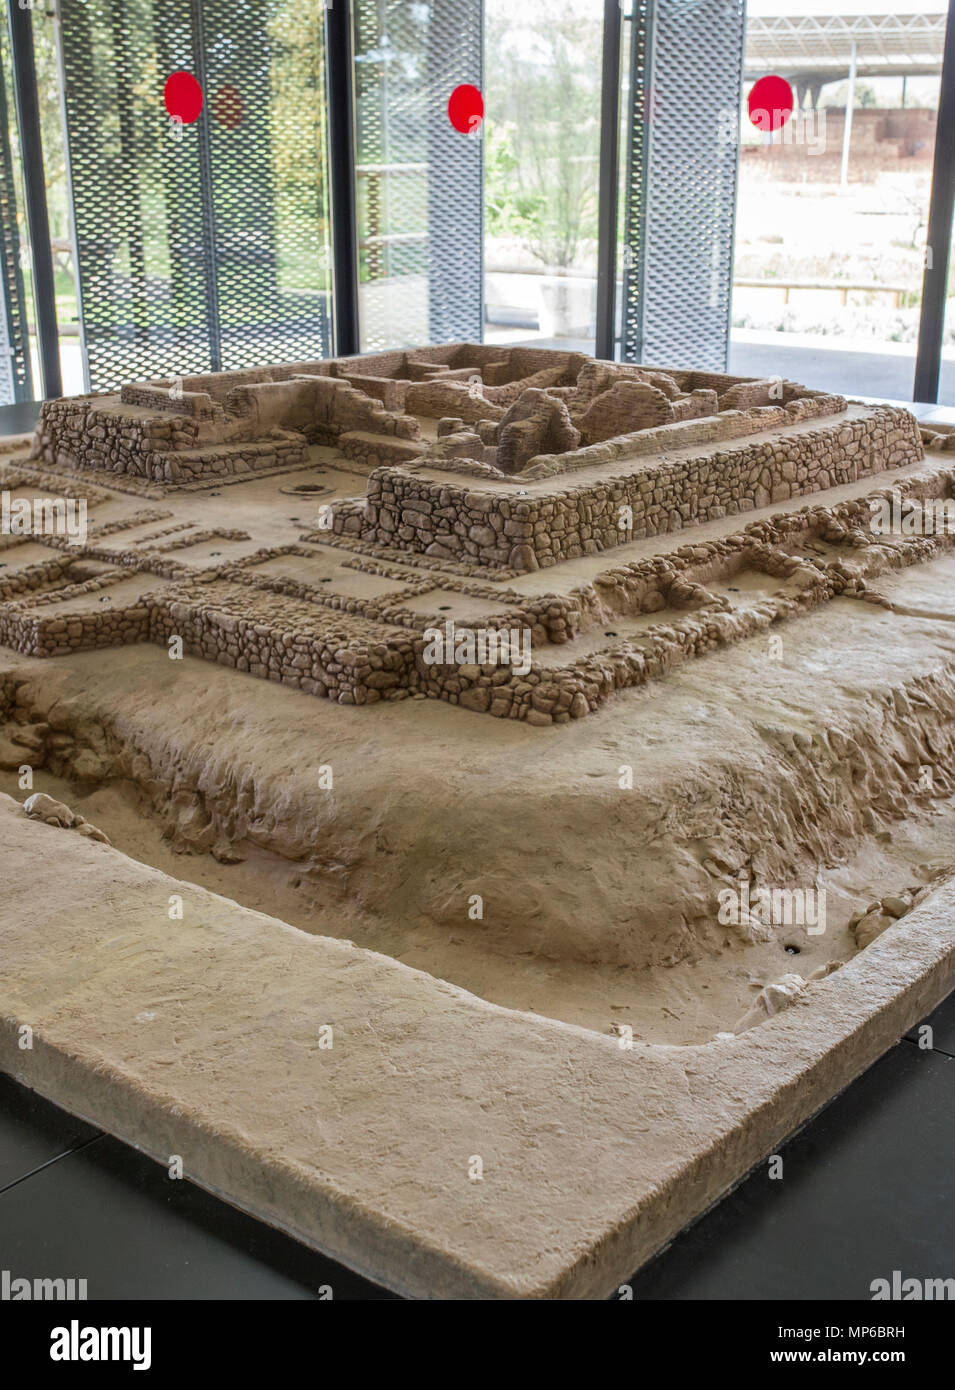 Zalamea De La Serena, Spagna - Aprile 28th, 2018: modello in scala del Cancho Roano sito archeologico, zalamea de la Serena, Badajoz, Spagna Foto Stock